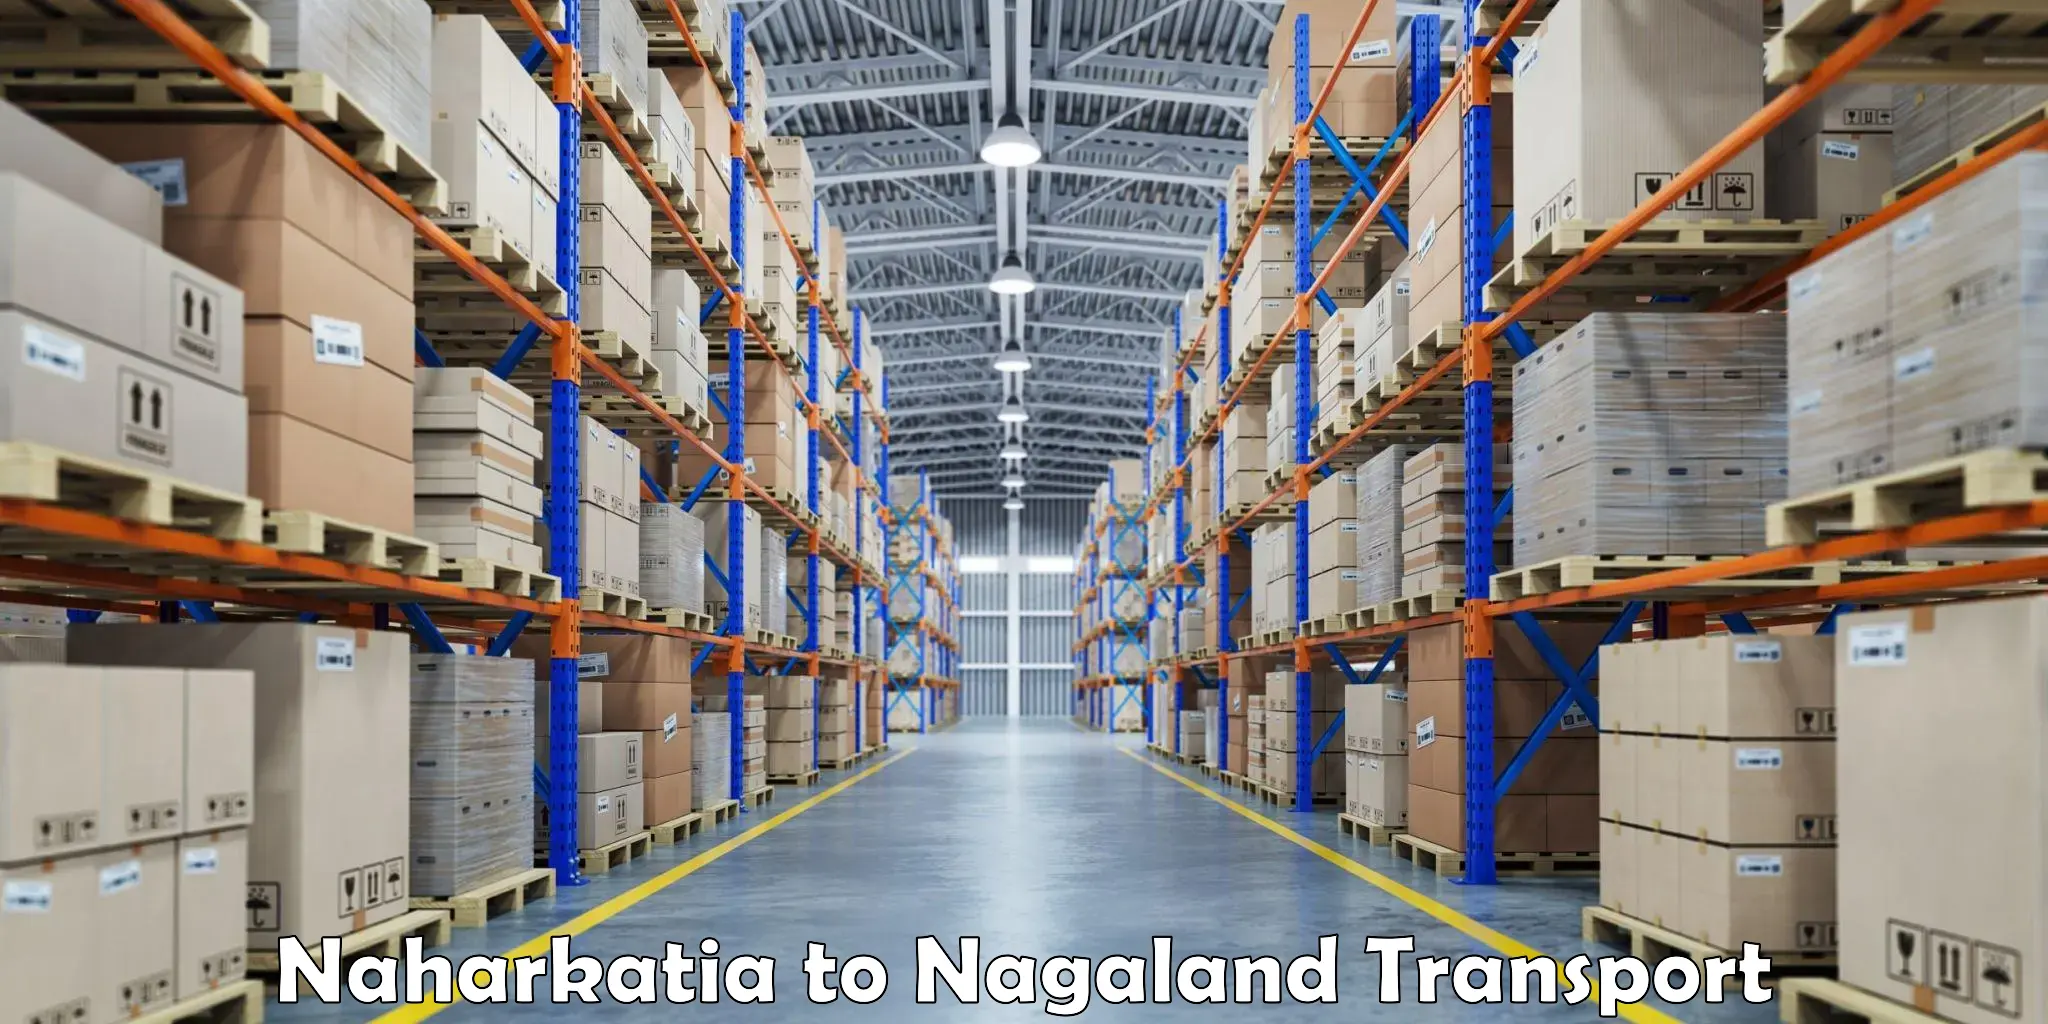 Nearby transport service Naharkatia to Nagaland